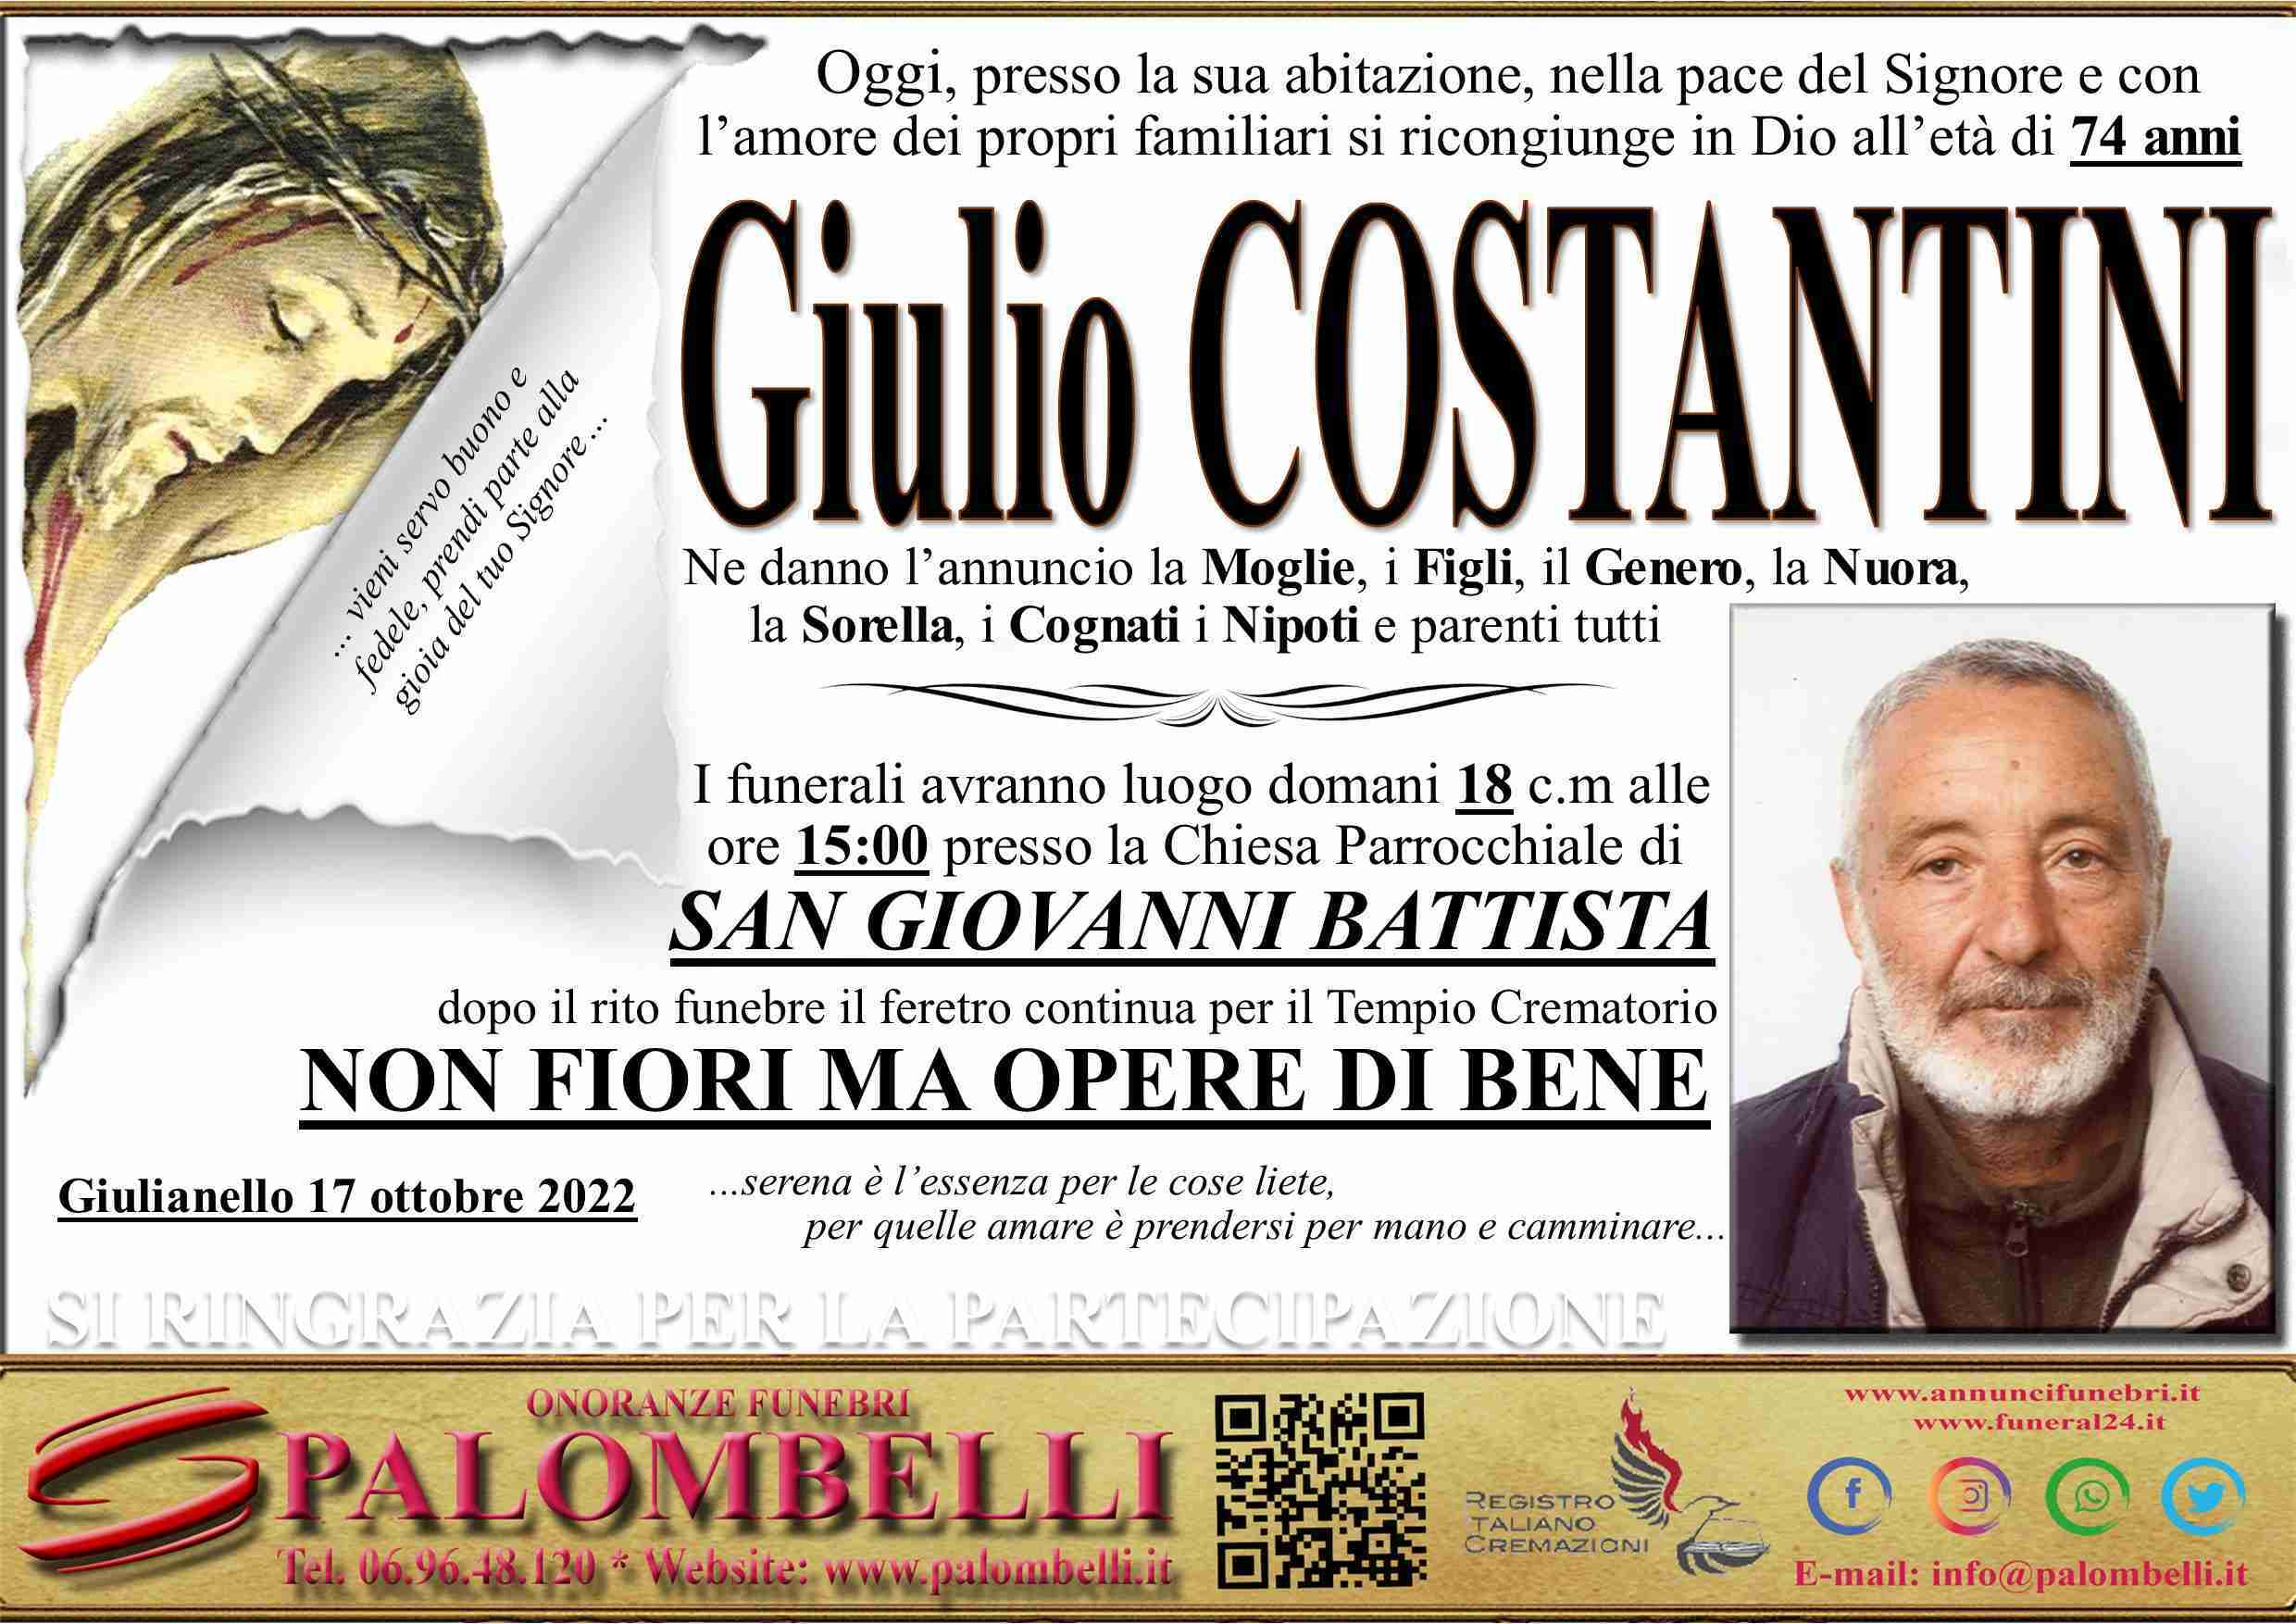 Giulio Costantini